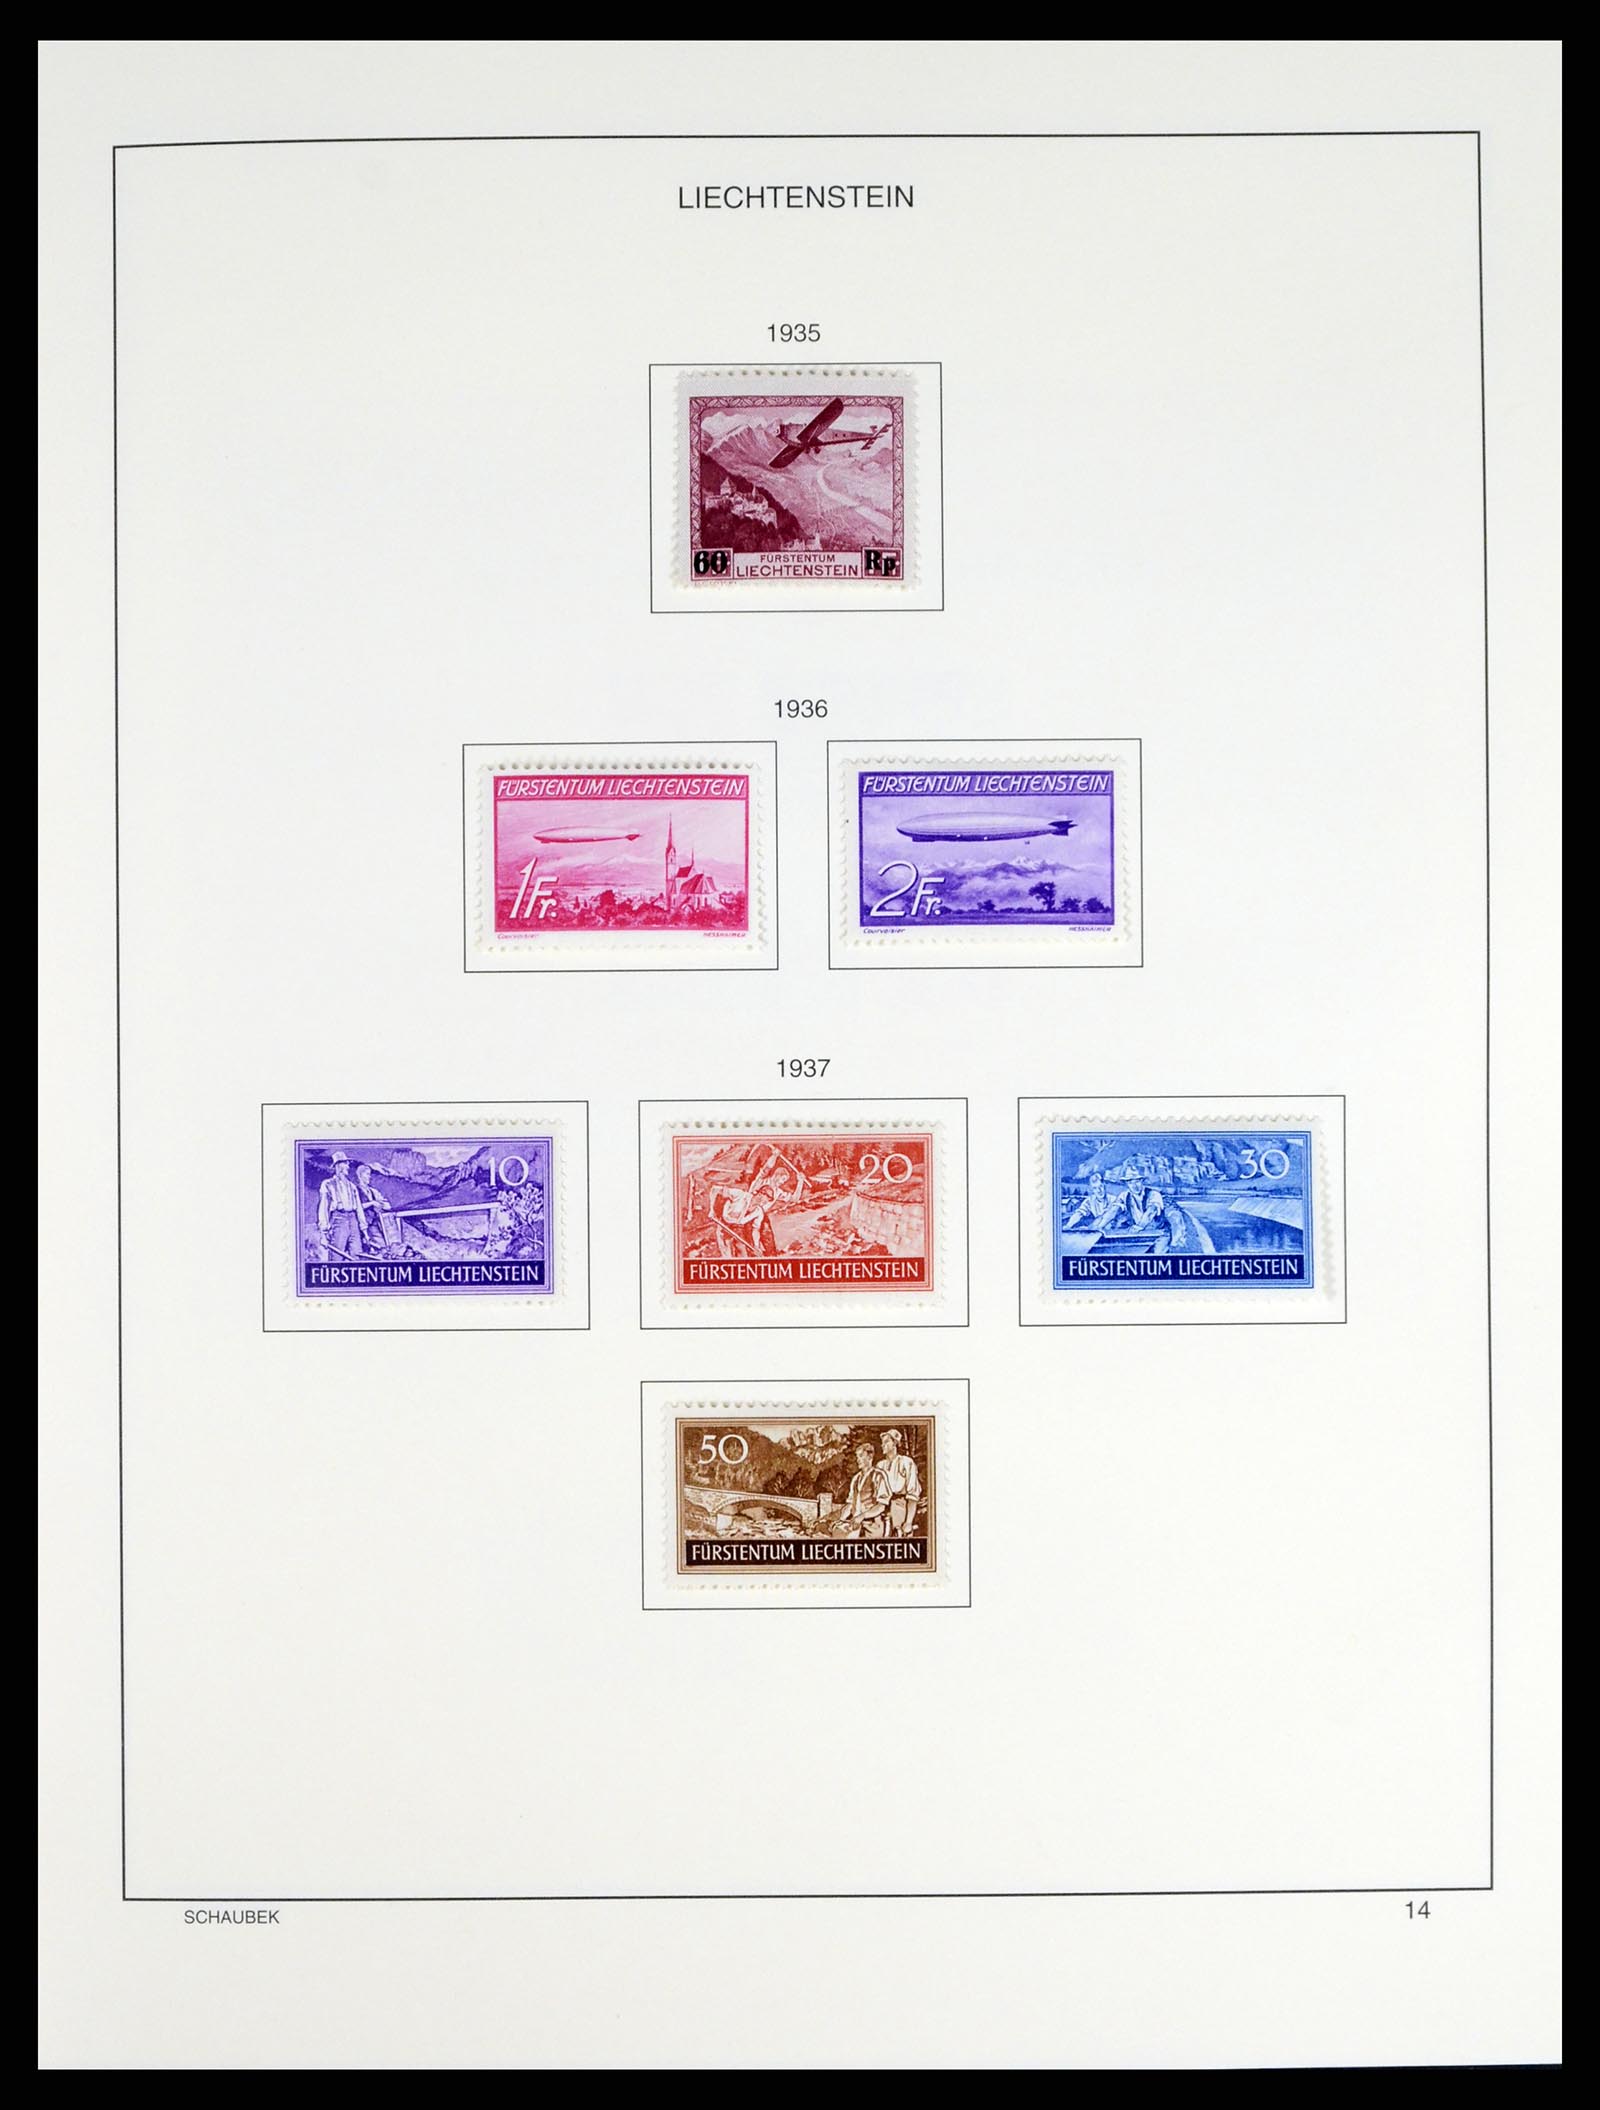 37547 015 - Stamp collection 37547 Liechtenstein 1912-2011.